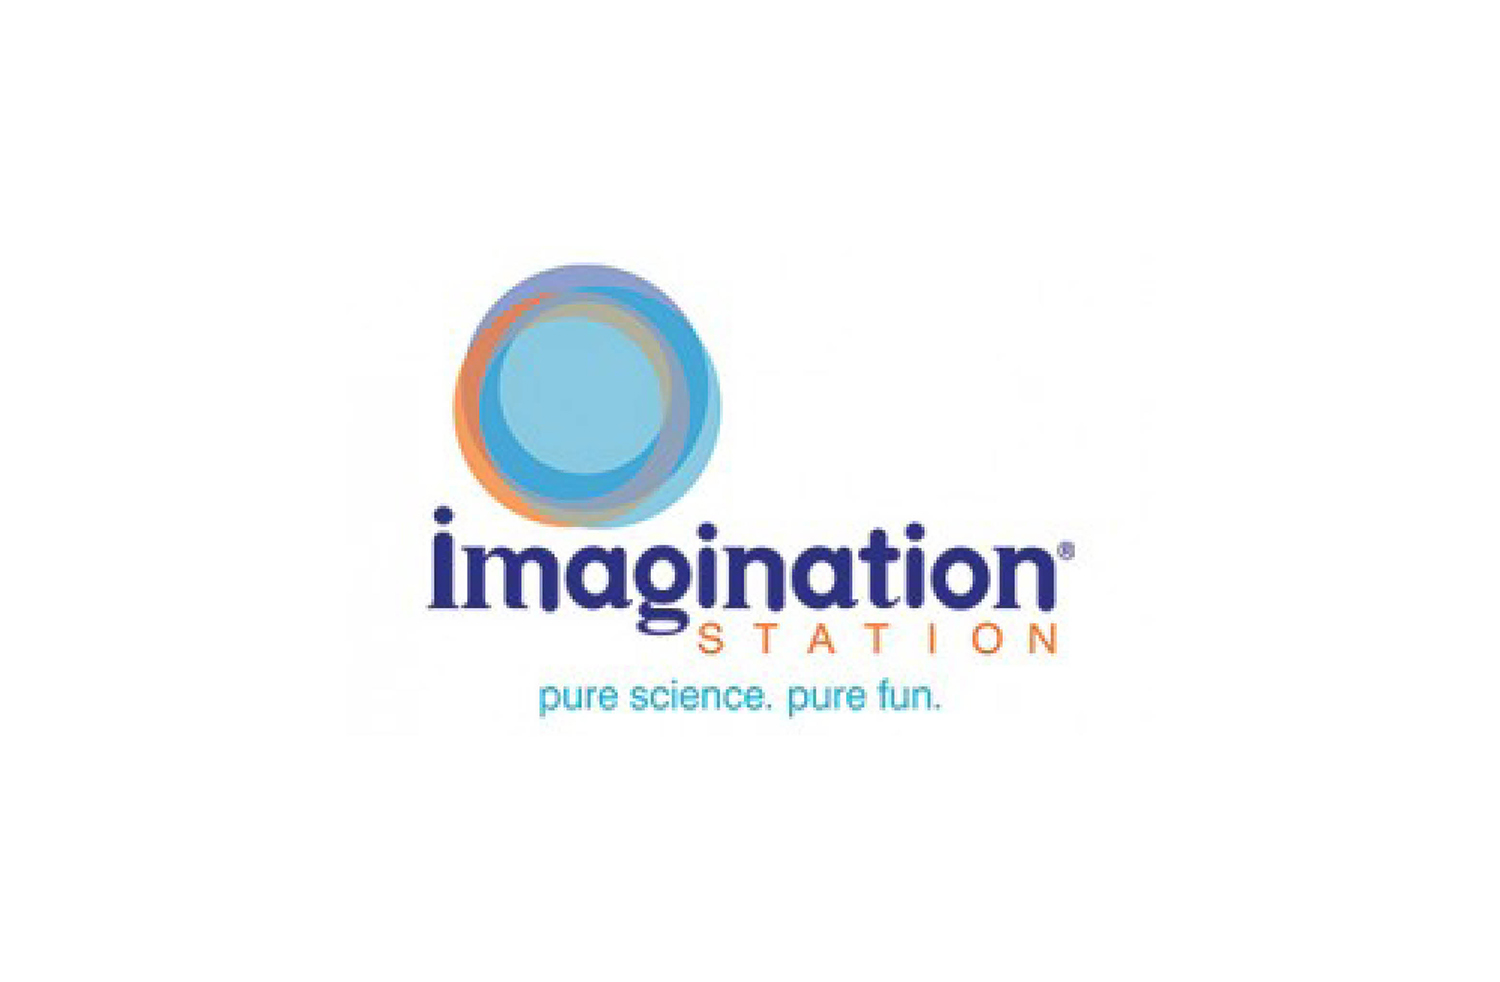 Boss_Display_Client_Imagination_Station_Logo.jpg